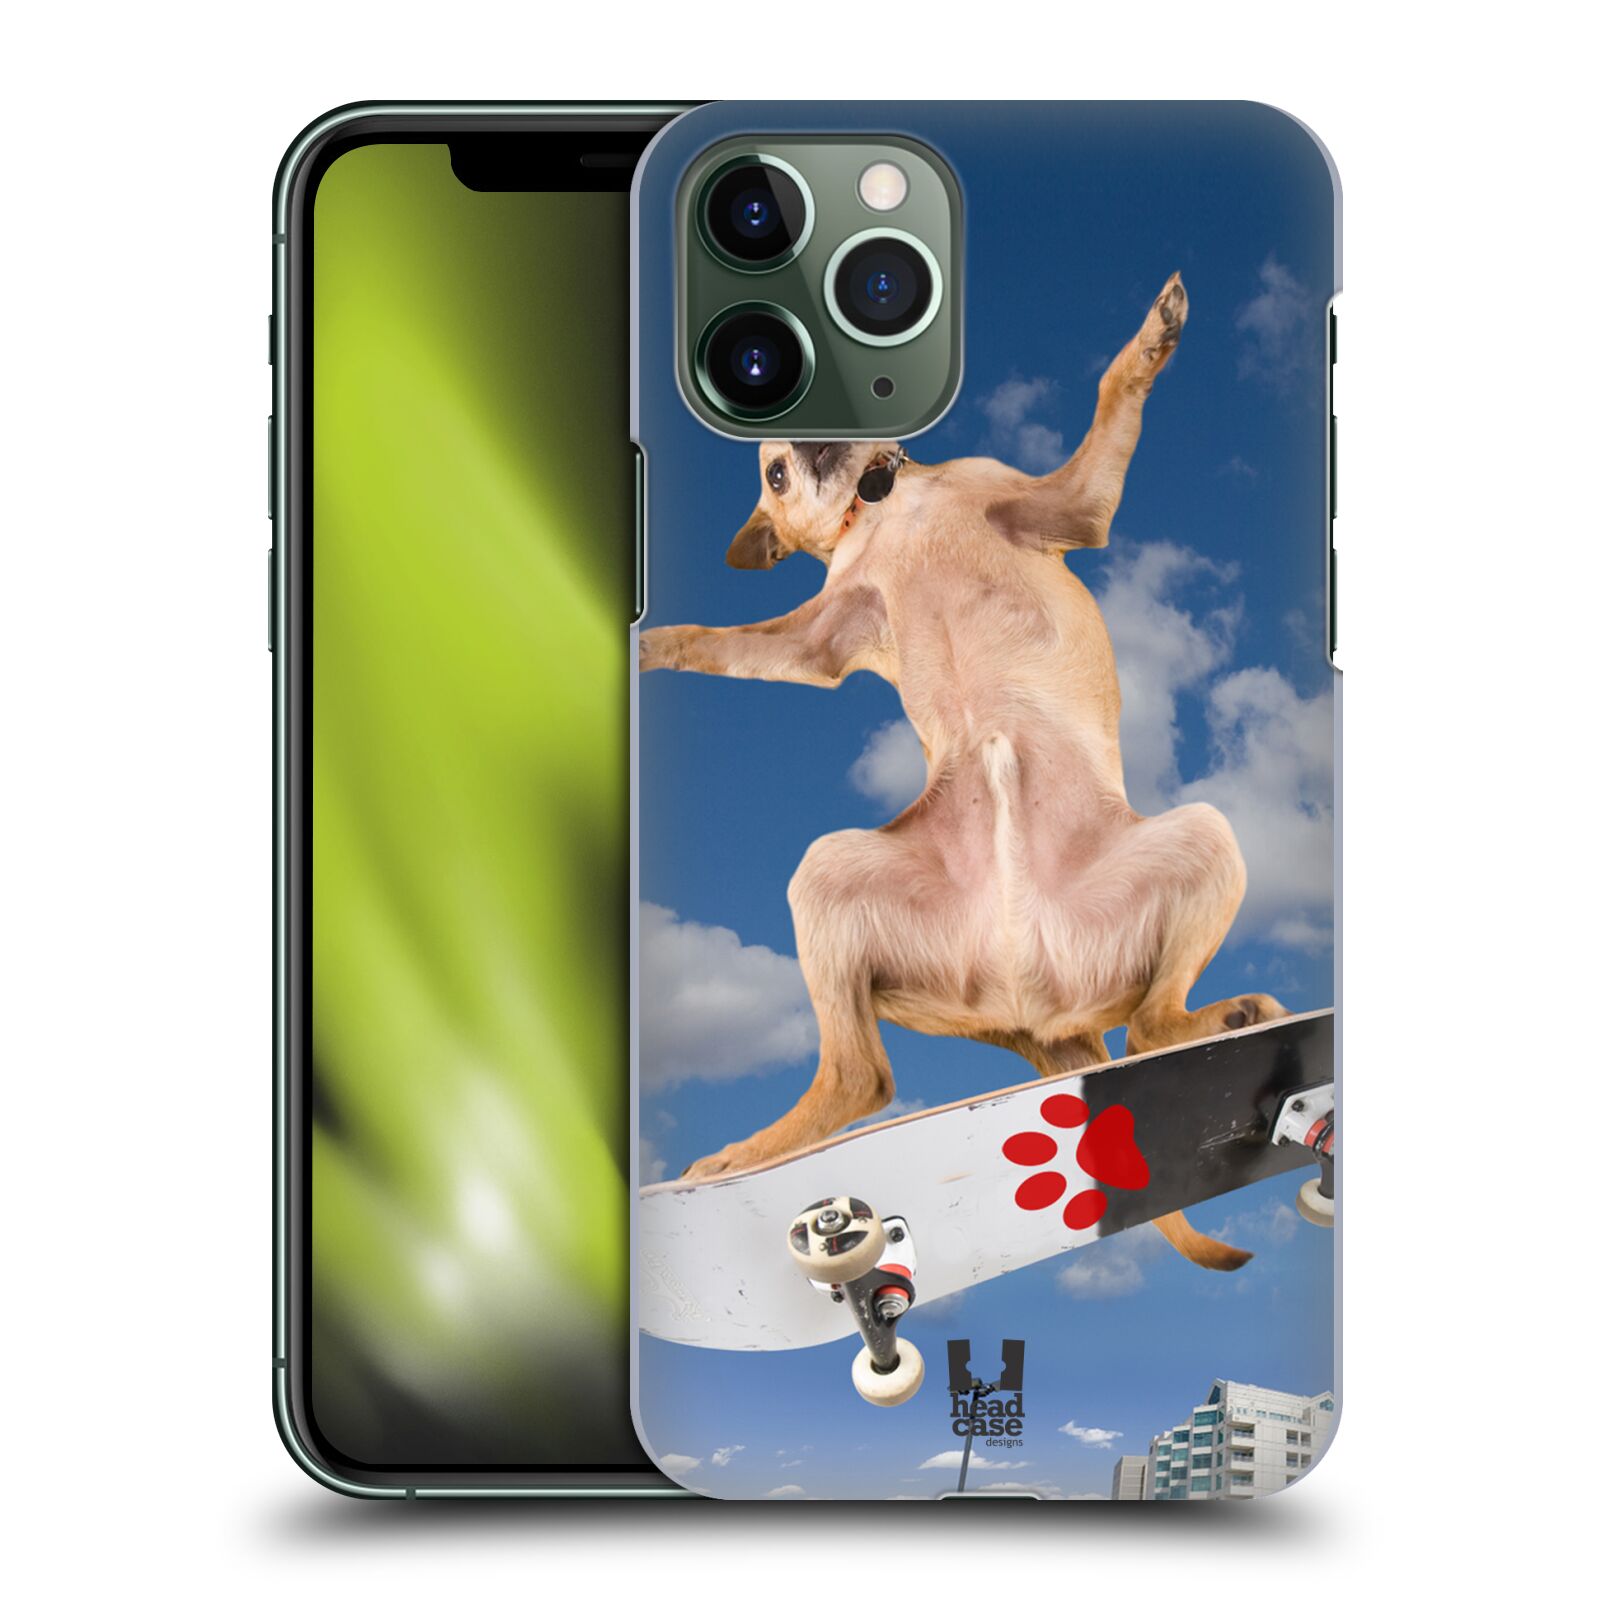 Pouzdro na mobil Apple Iphone 11 PRO - HEAD CASE - vzor Legrační zvířátka pejsek skateboard